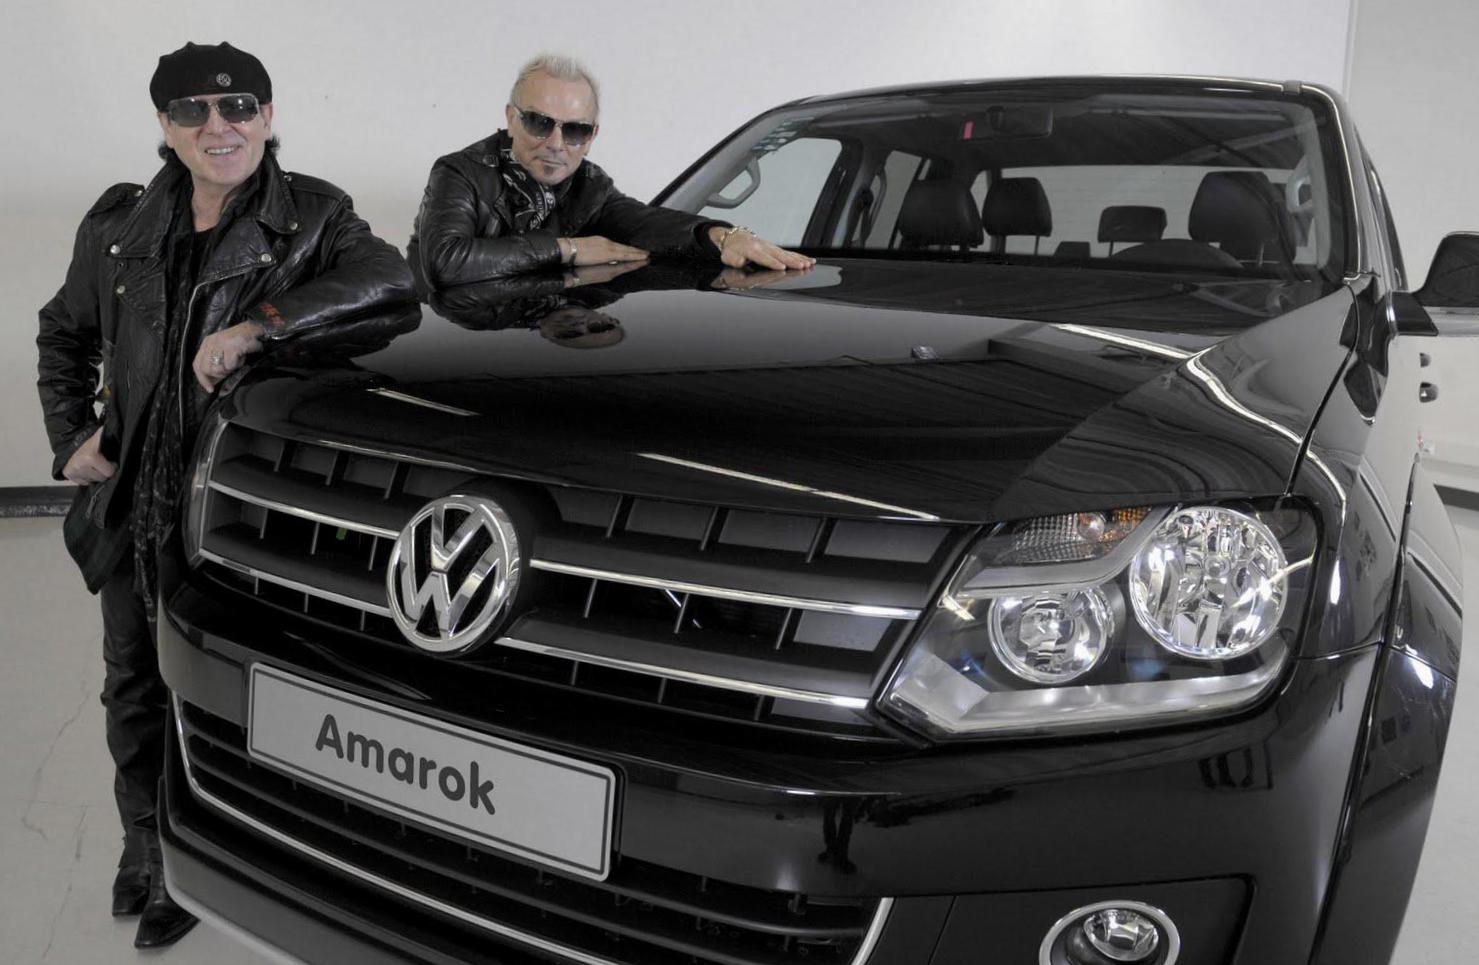 Amarok DoubleCab Volkswagen cost 2015